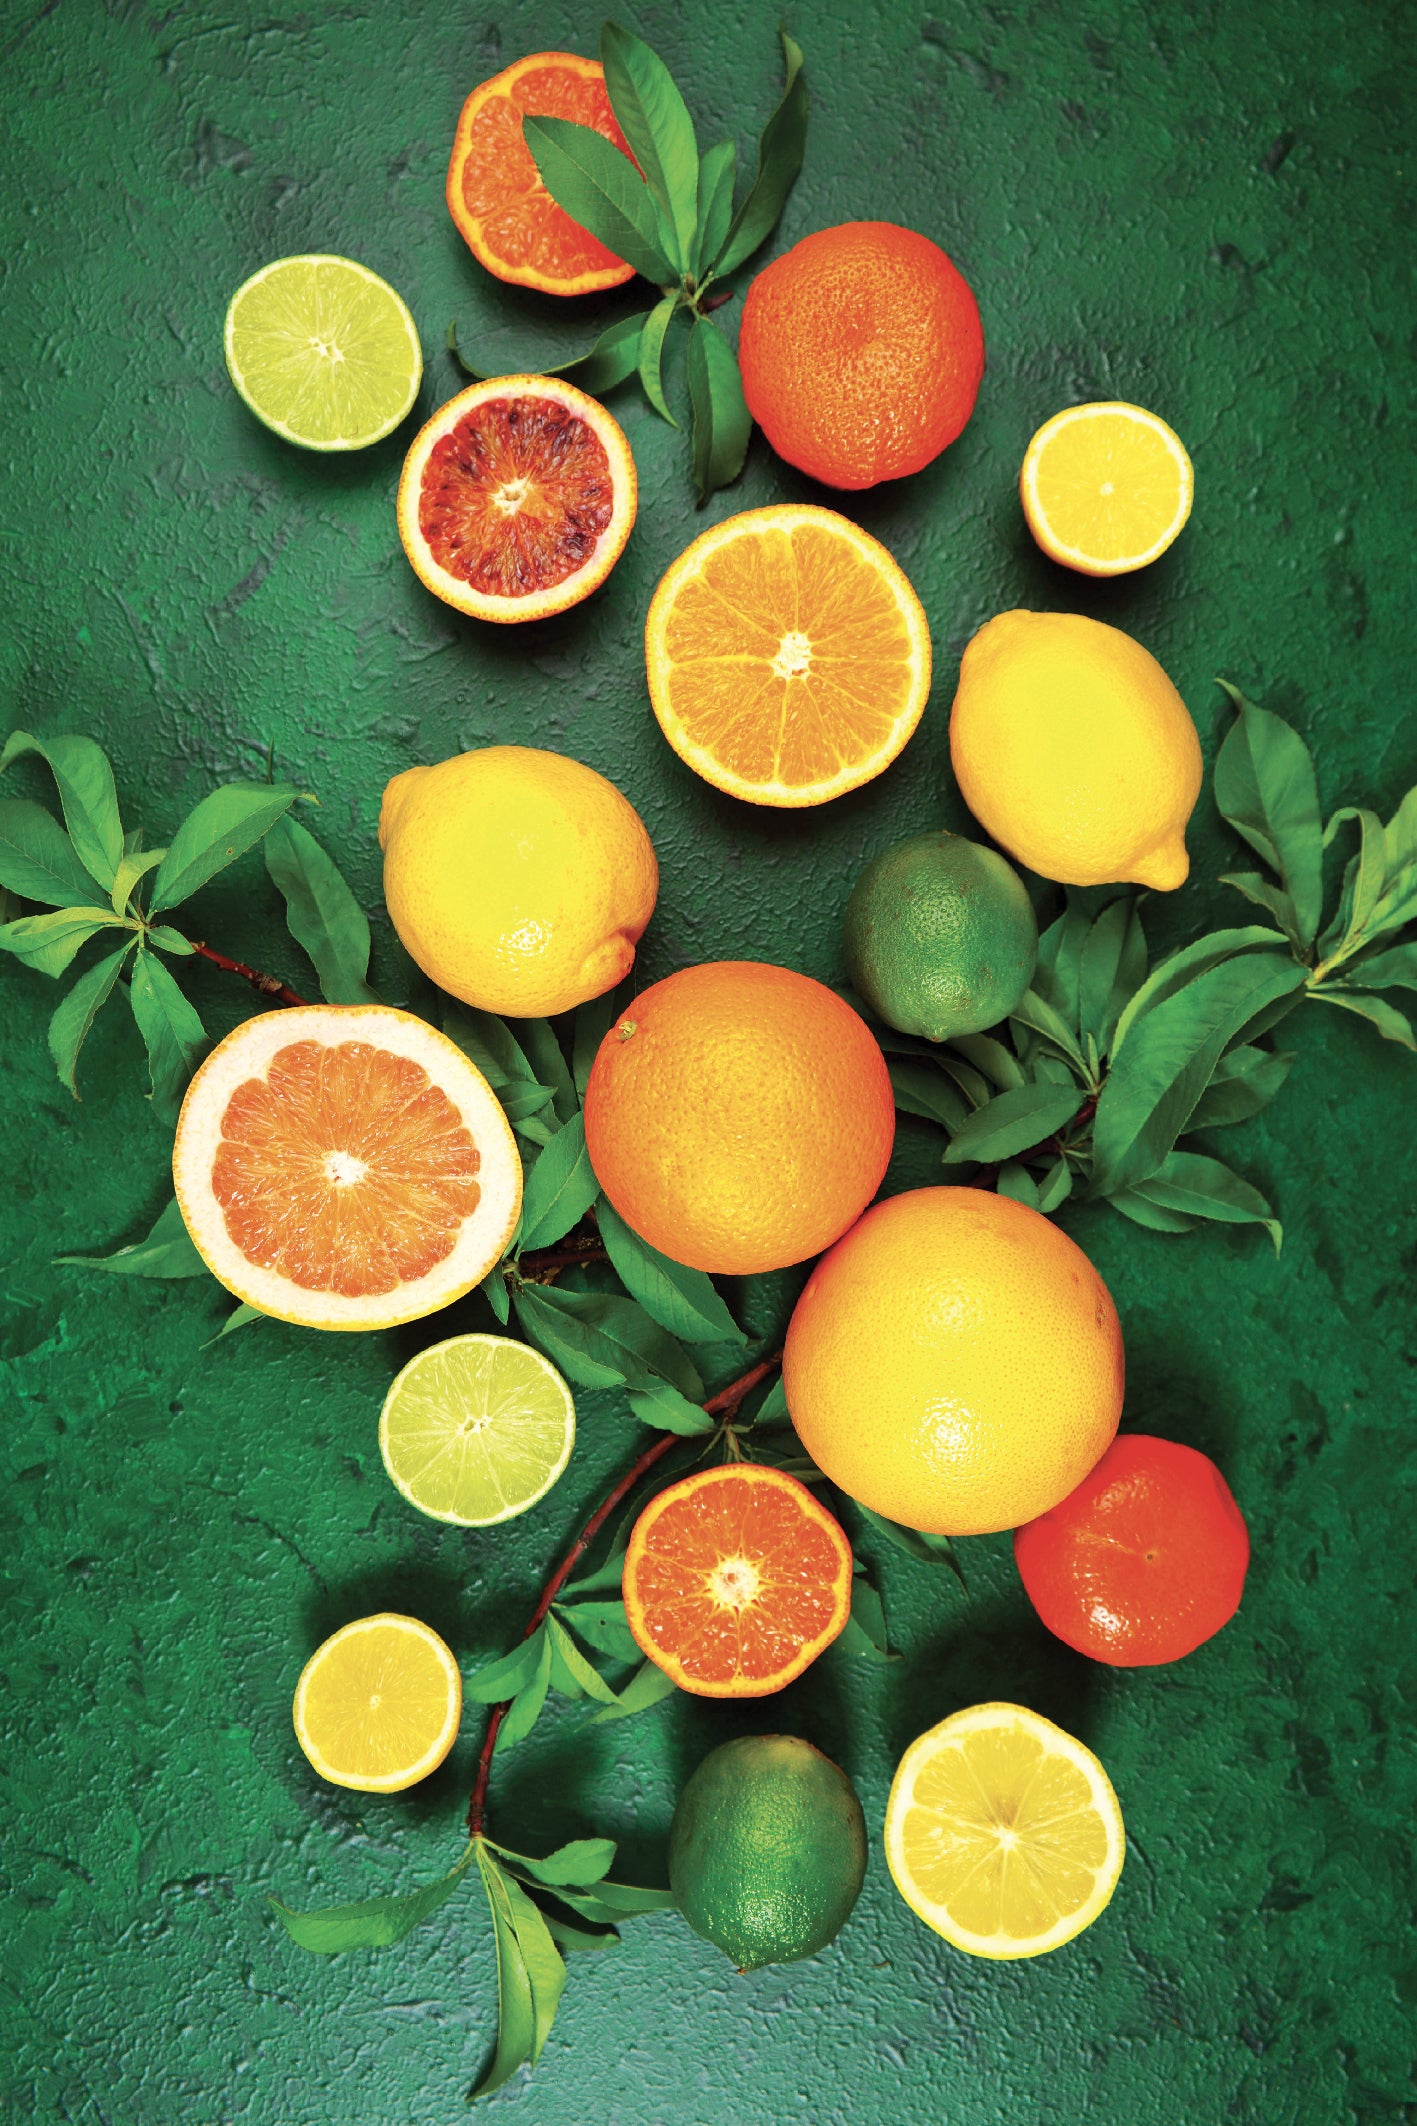 tableau de fruits avec des oranges et citron jaune et vert 